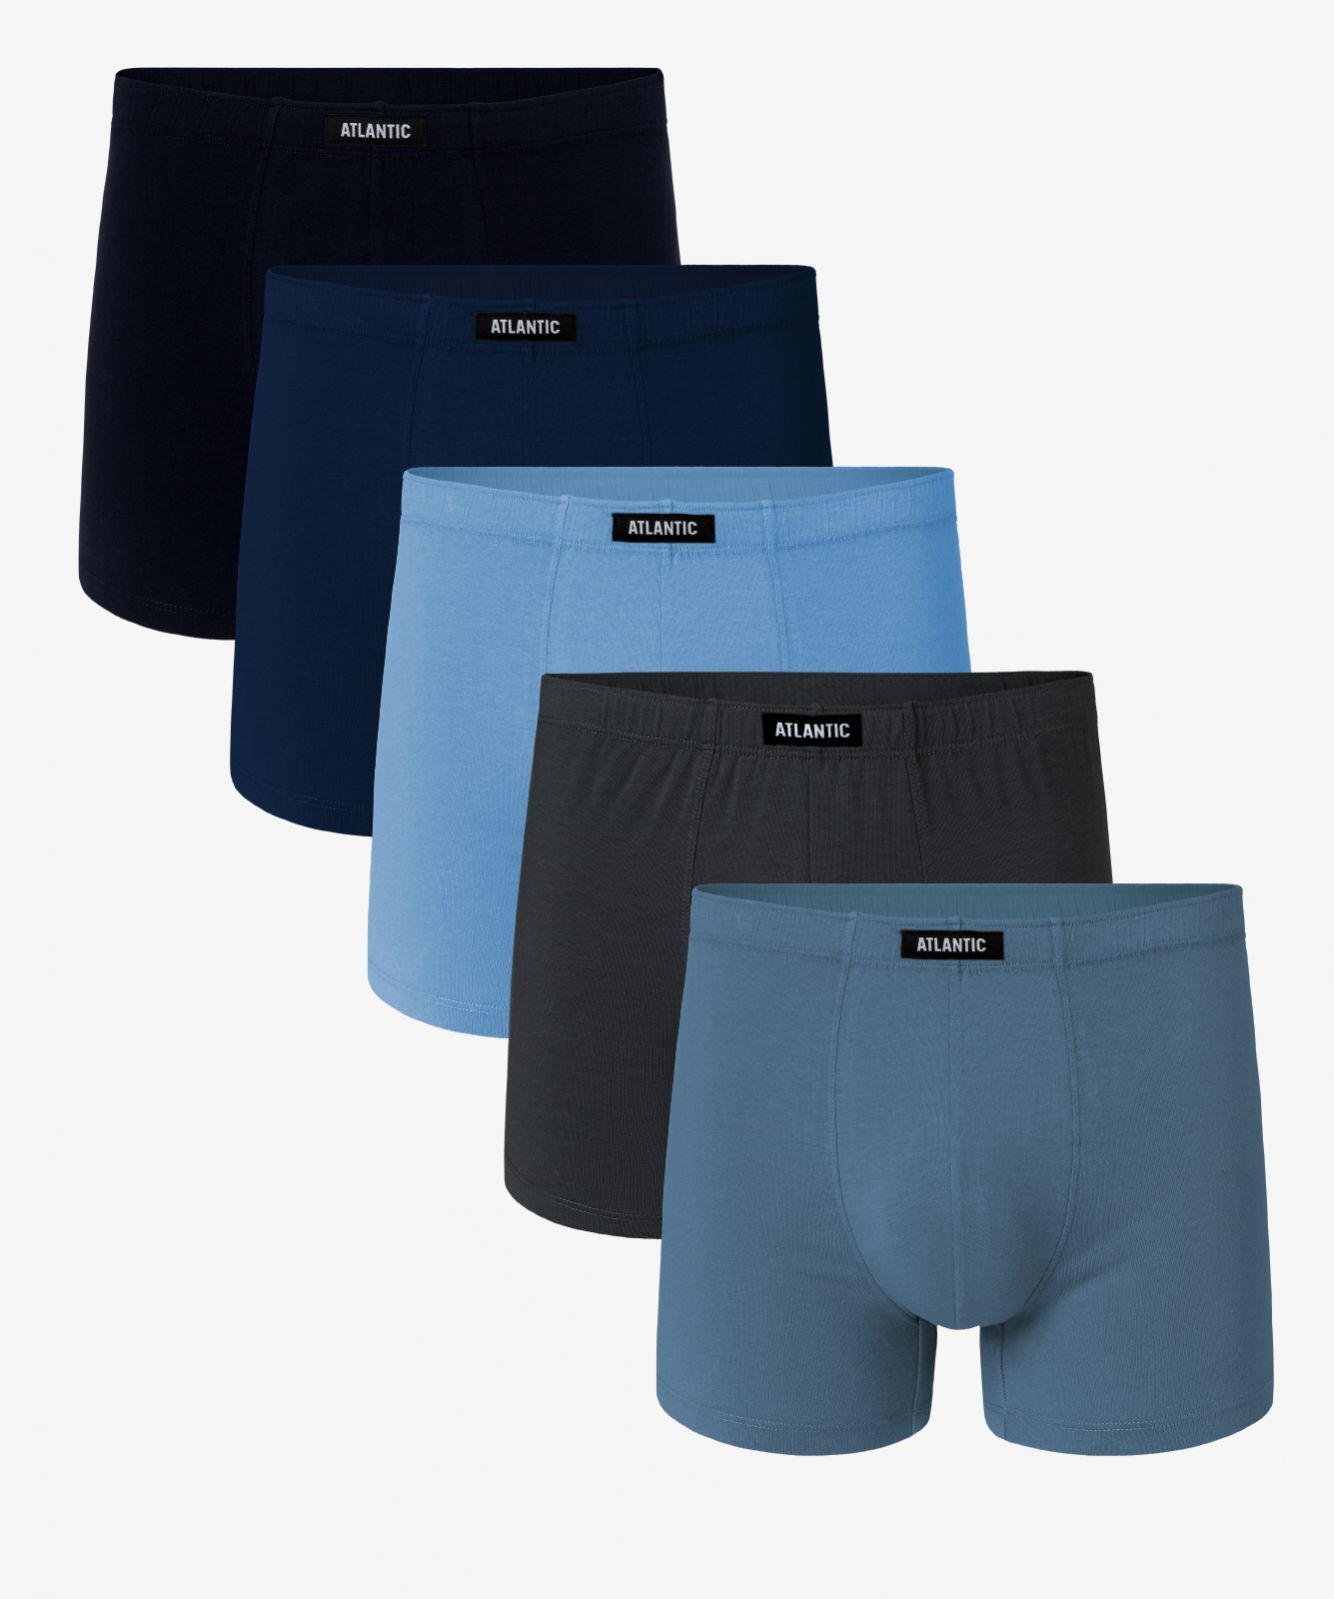 Мужские трусы шорты Atlantic, набор из 5 шт., хлопок, темно-синие + темно-голубые + светло-голубые + графит + голубые, 5SMH-002